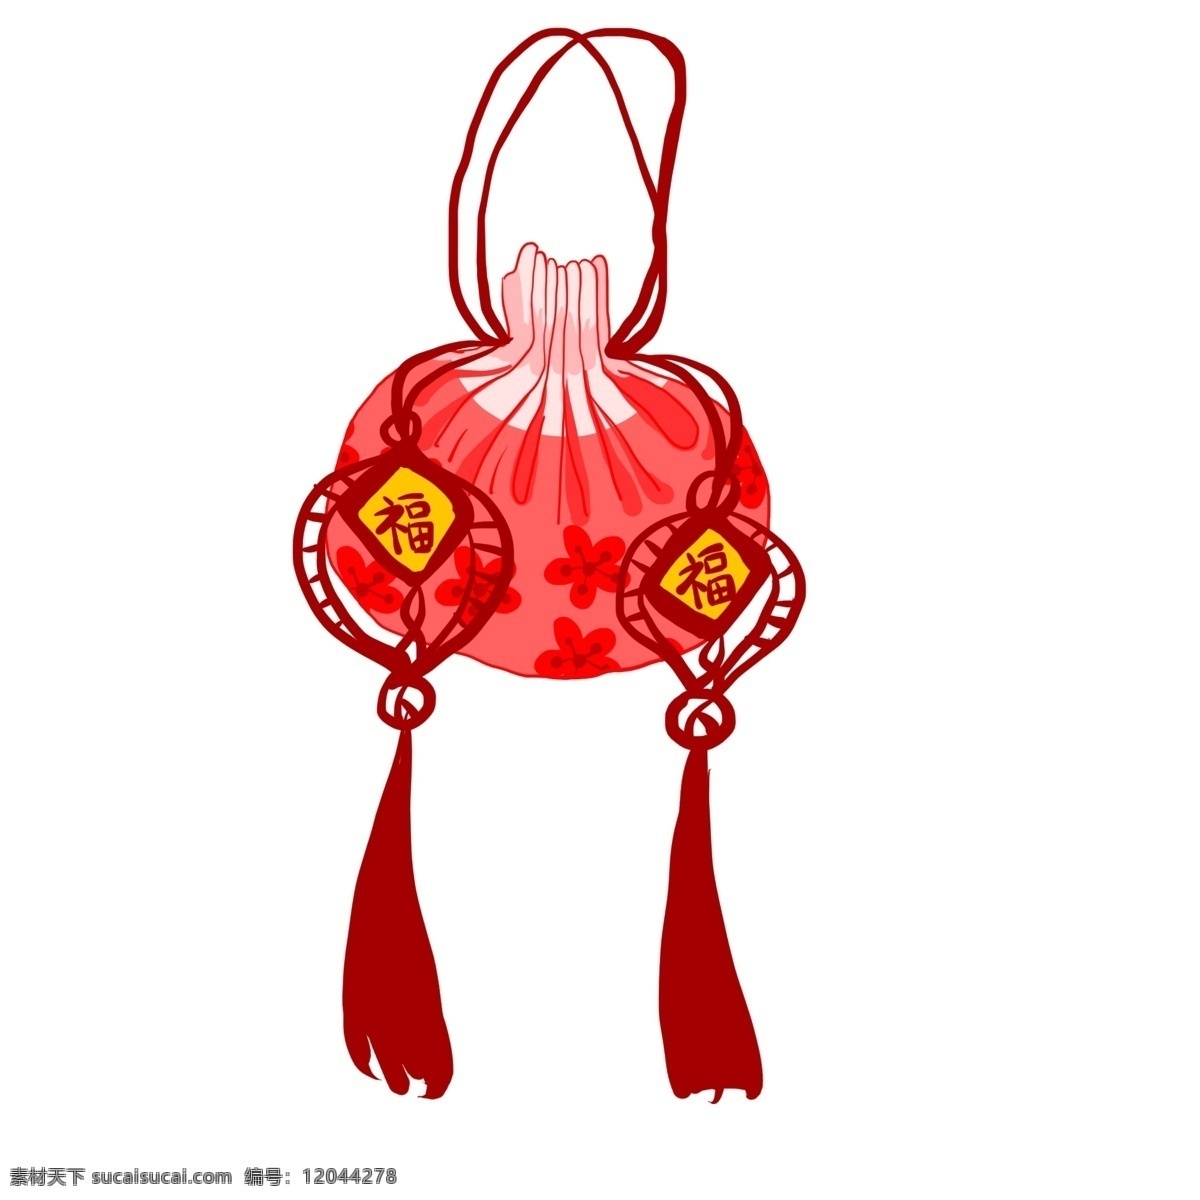 福字 中国结 挂件 装饰 春节 中国风 手绘 卡通 红色 福袋 红色福袋 中国风挂件 红色挂饰 卡通挂饰